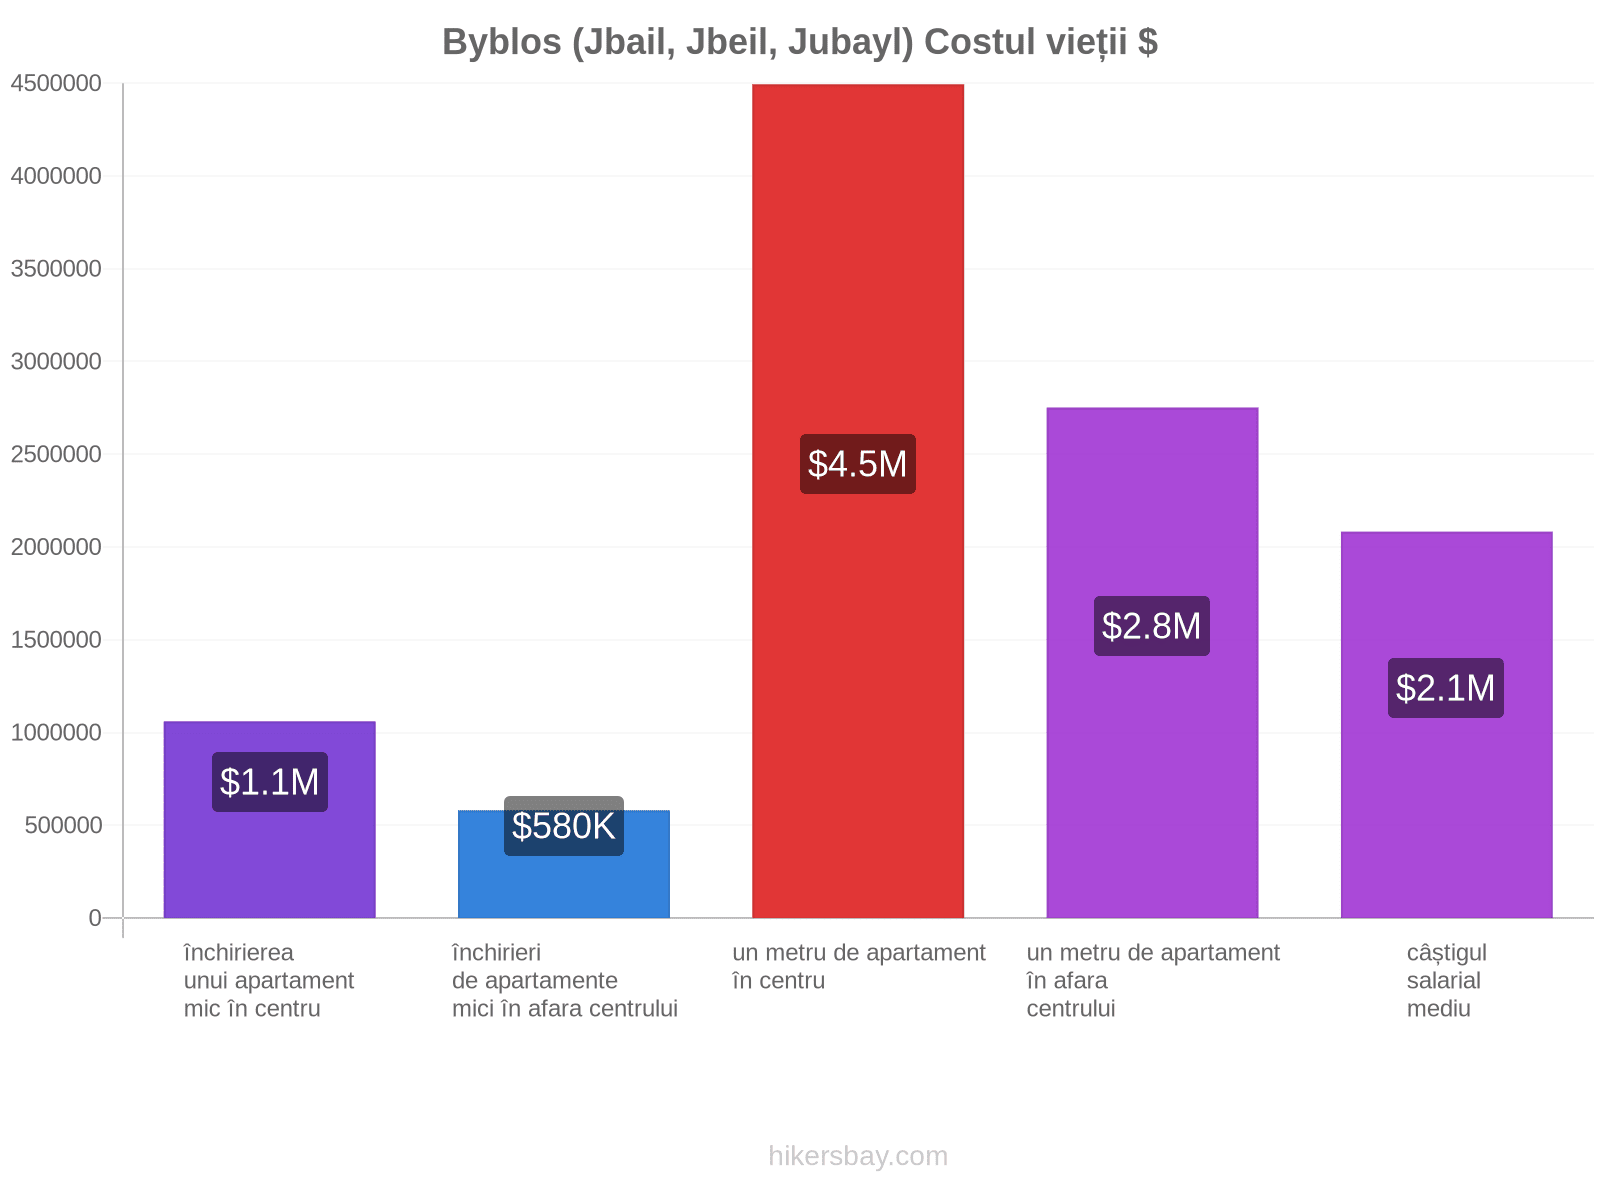 Byblos (Jbail, Jbeil, Jubayl) costul vieții hikersbay.com